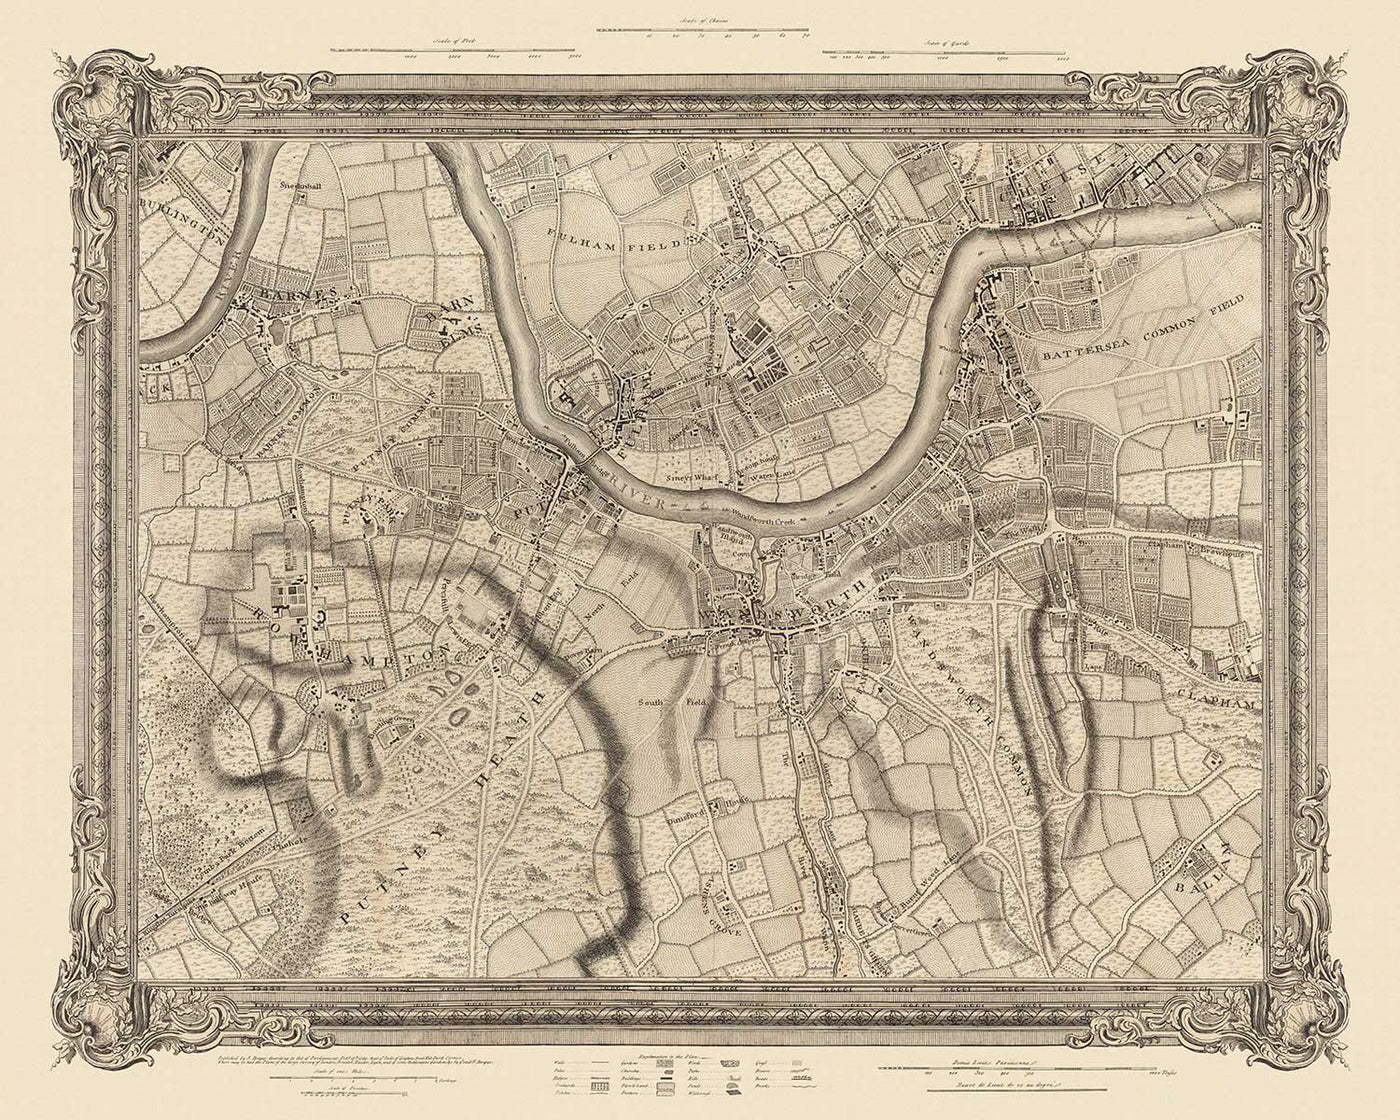 Ancienne carte de l'ouest et du sud-ouest de Londres en 1746 par John Rocque - Fulham, Wandworth, Chelsea, Putney, Battersea, SW3, SW6, SW10, SW11, SW13, SW15, SW18